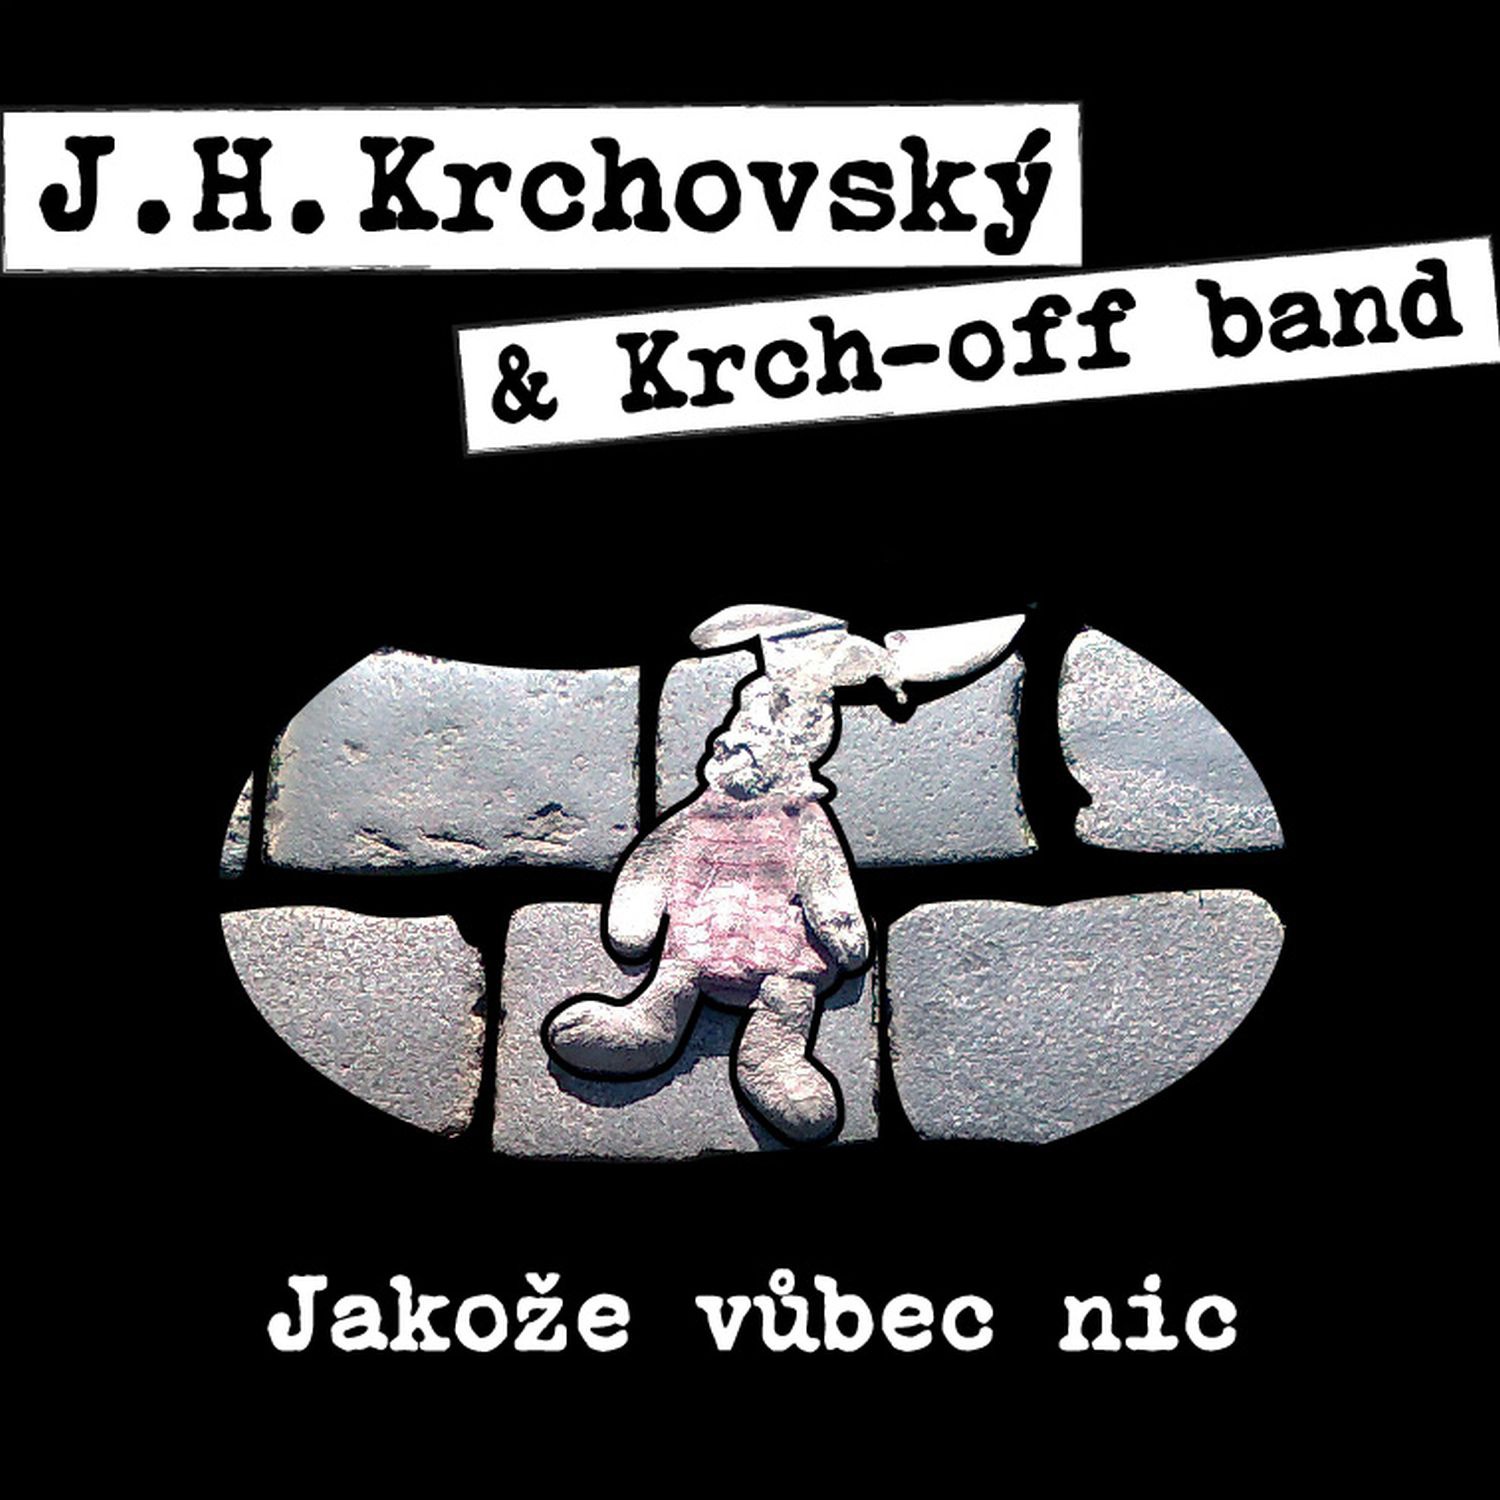 CD Shop - KRCHOVSKY J. H. & KRCH-OFF BAN JAKOZE VUBEC NIC